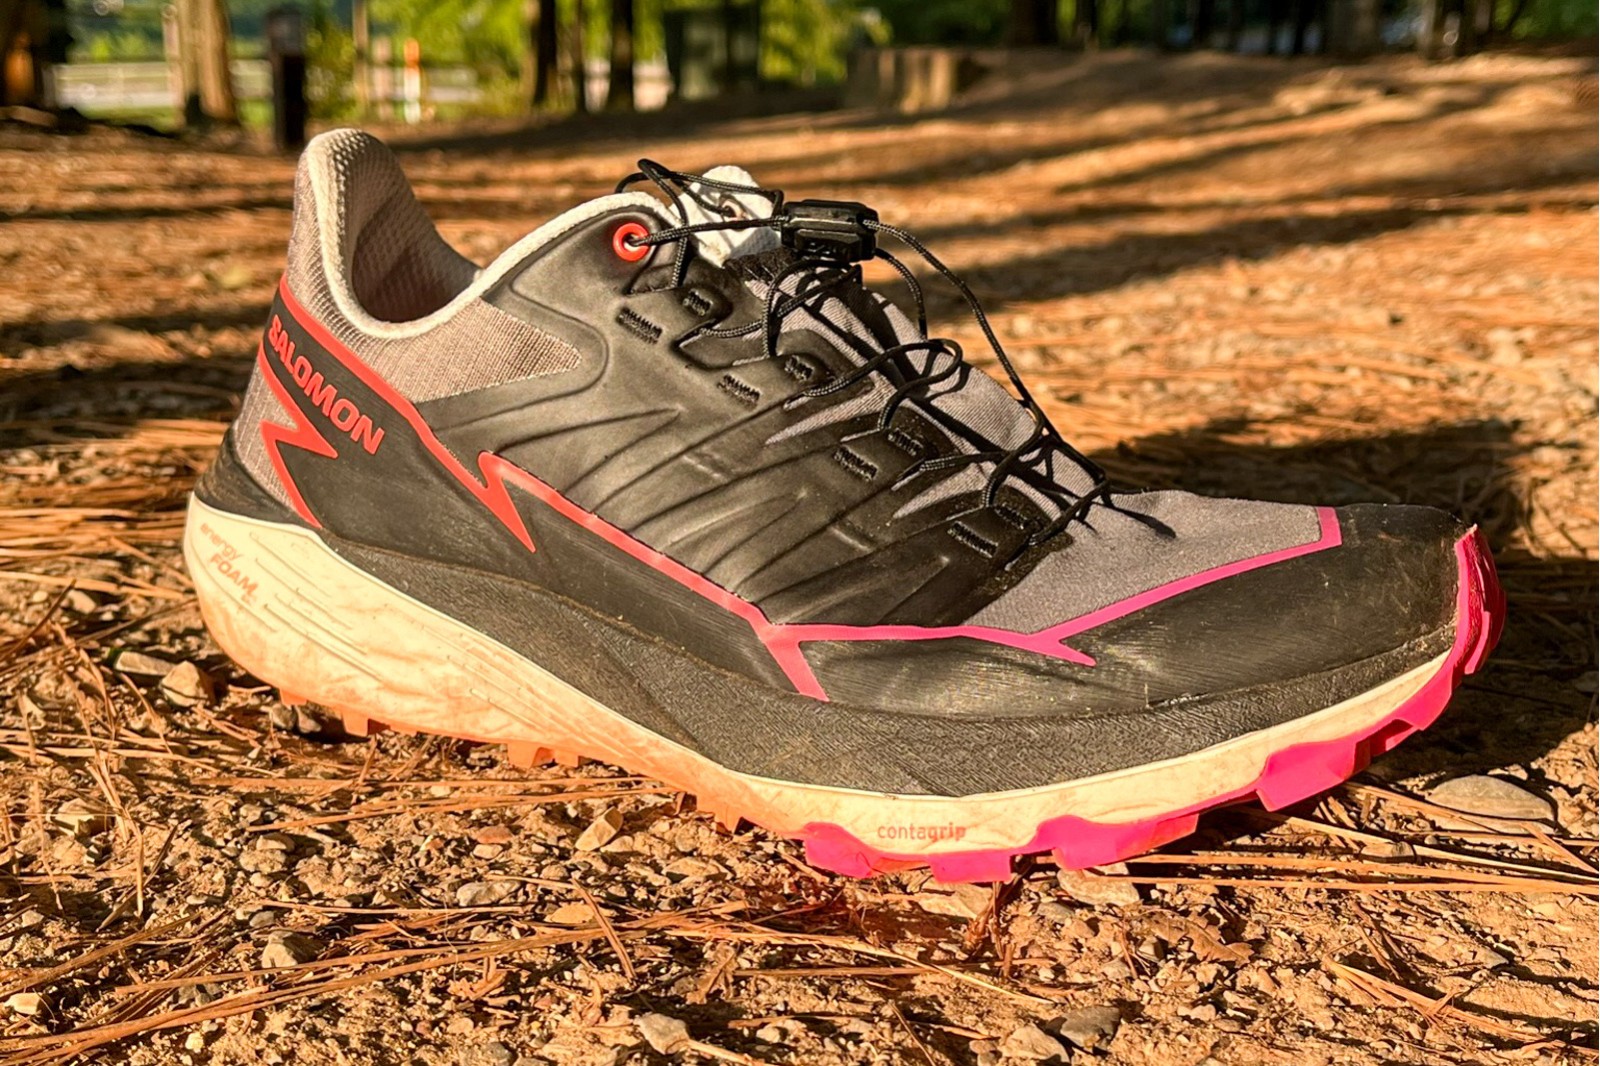 Salomon Thundercross GoreTex Trail Running Shoes - 2023